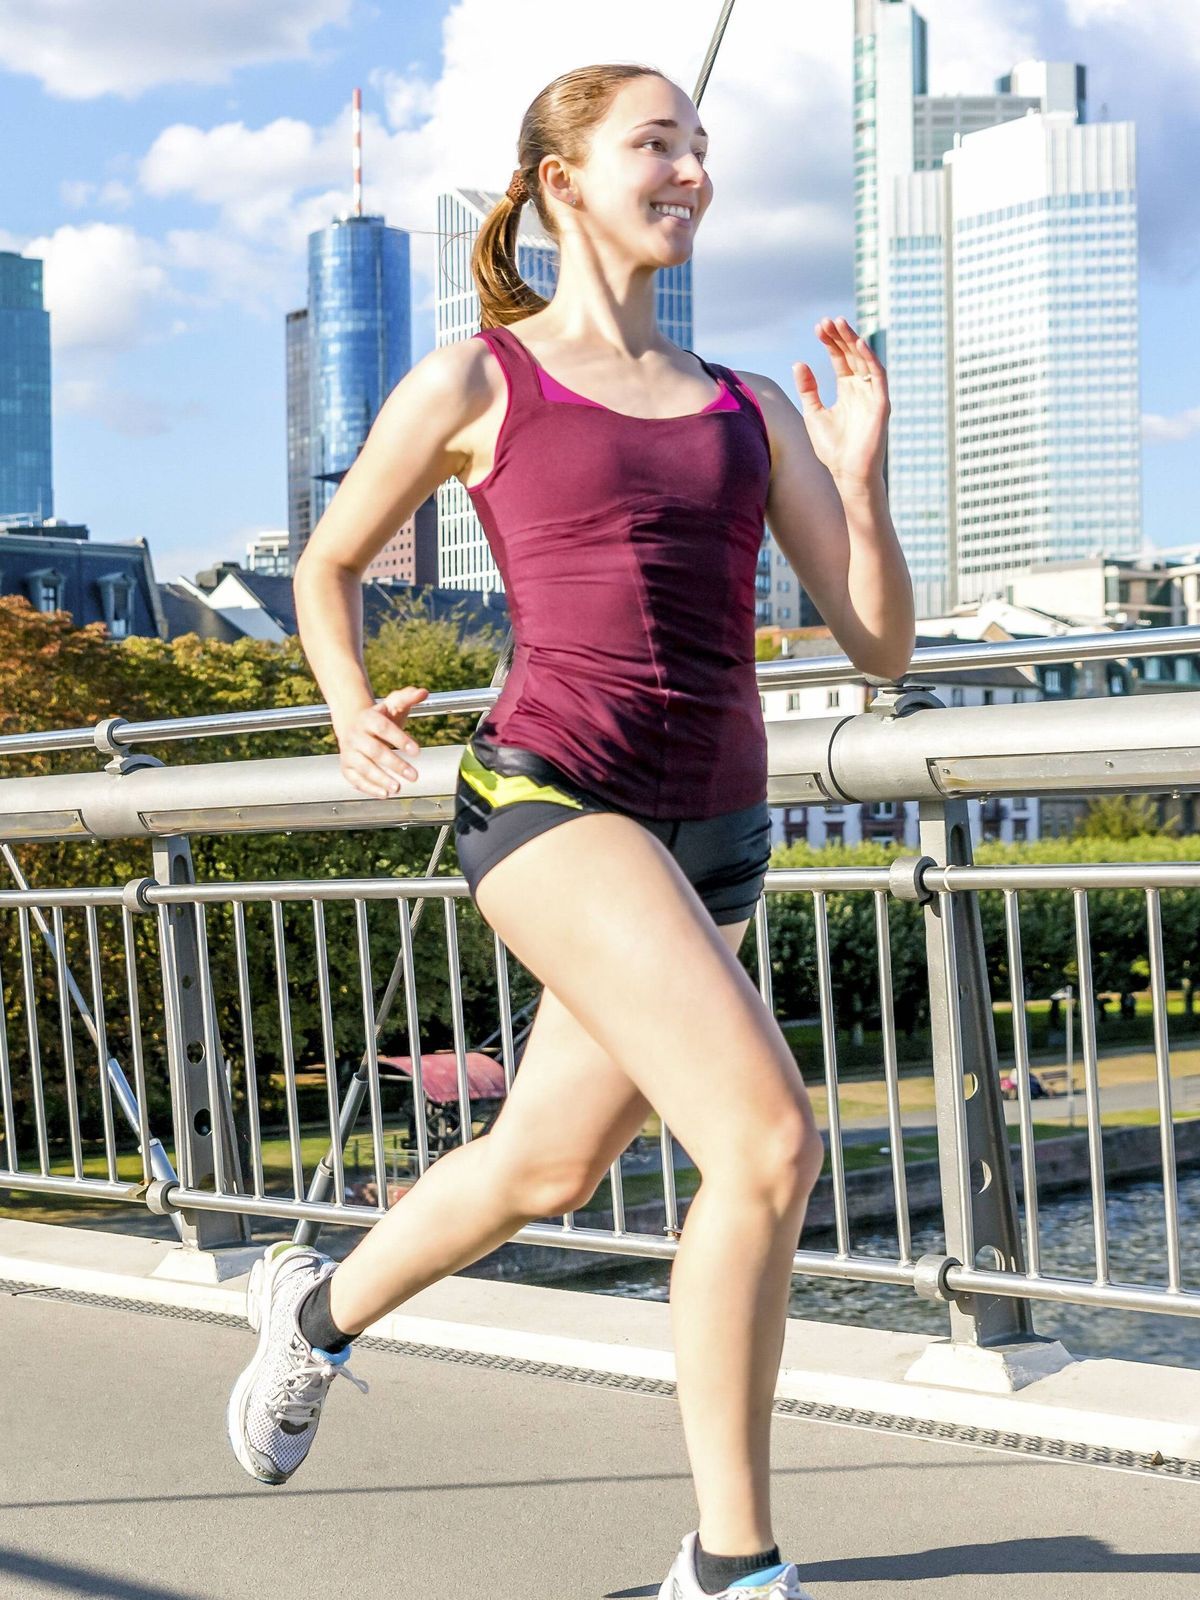 Einmal im Leben ein Marathon: Mit dem richtigen Trainingsplan erreichst du dein Ziel